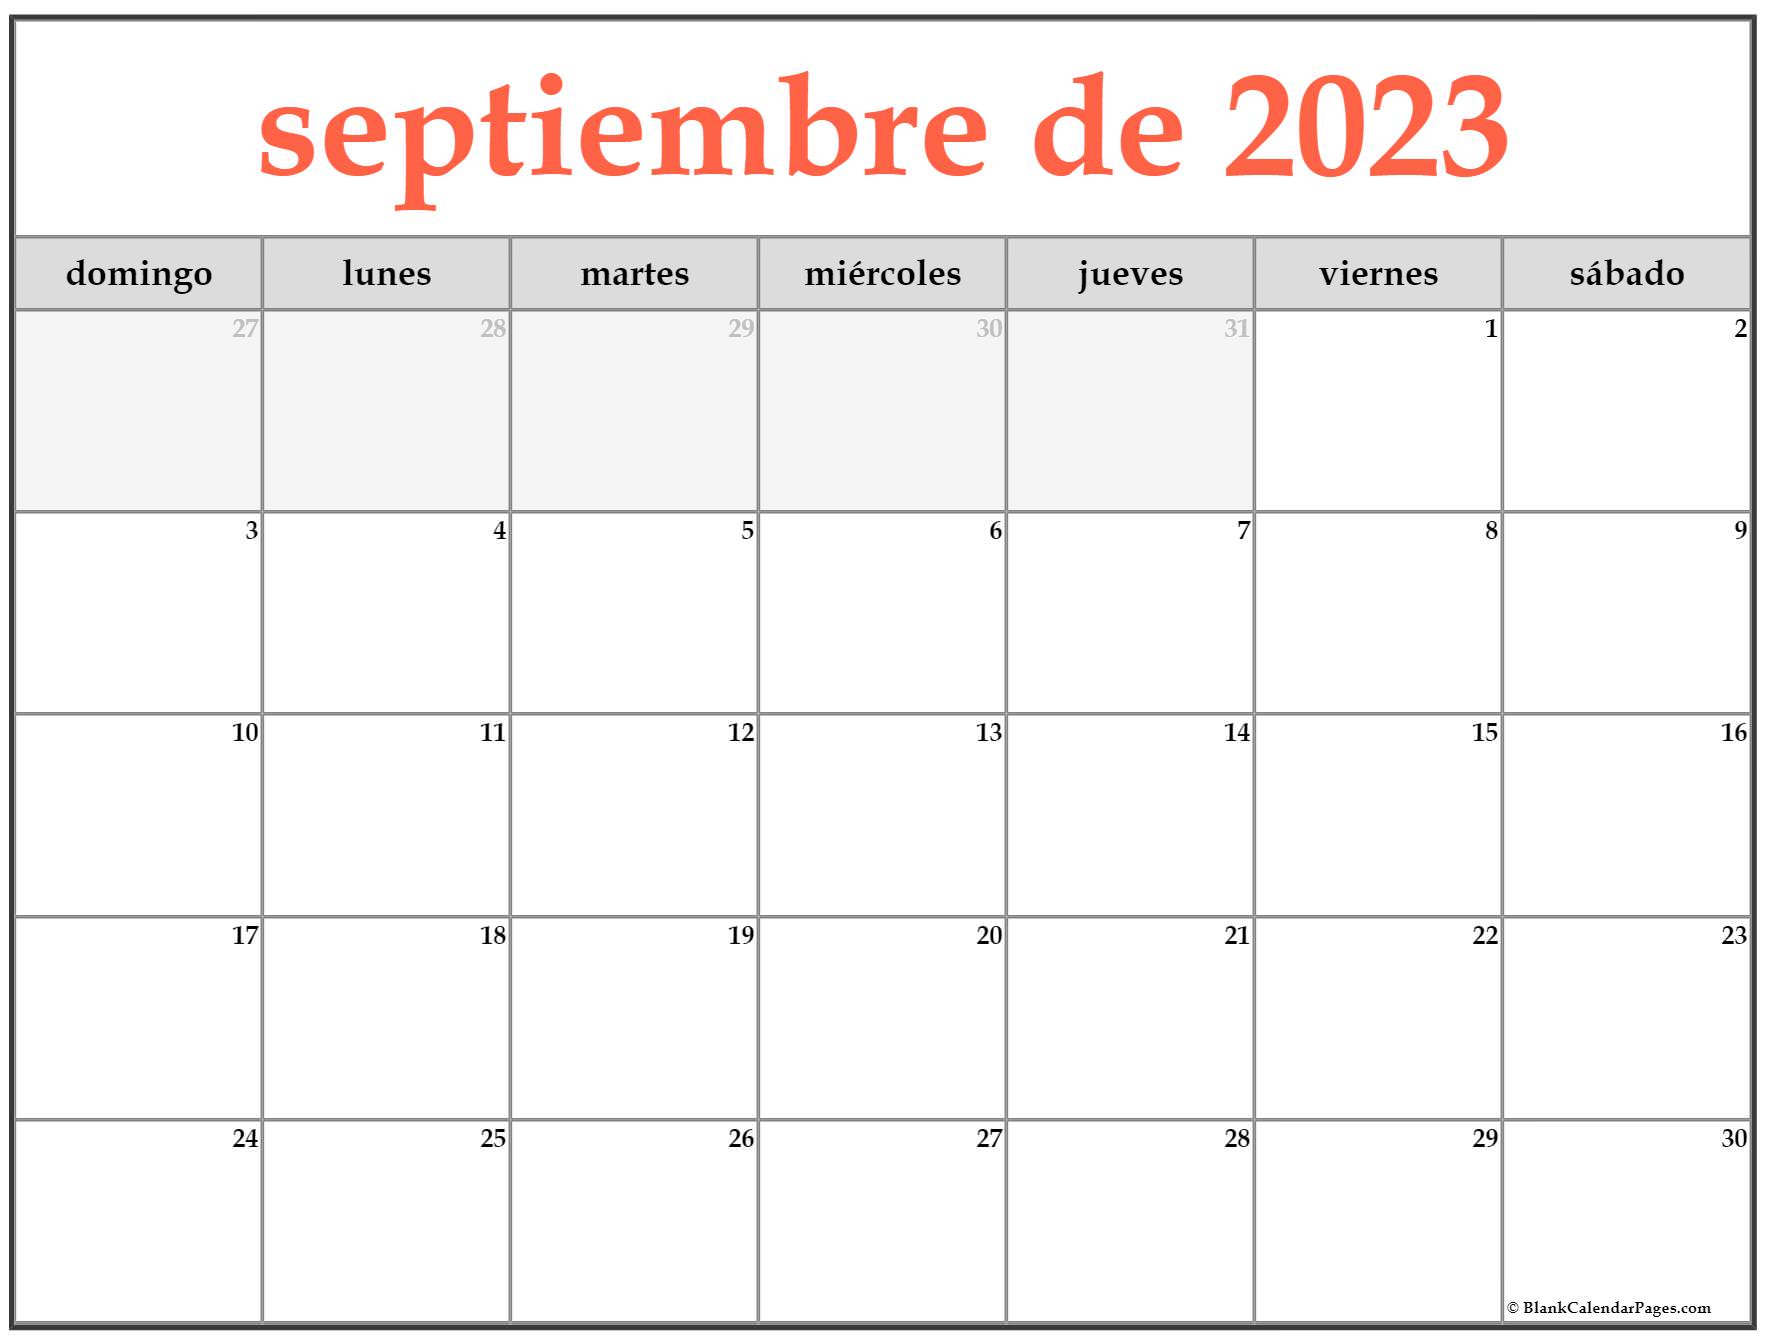 septiembre de 2023 calendario gratis Calendario septiembre